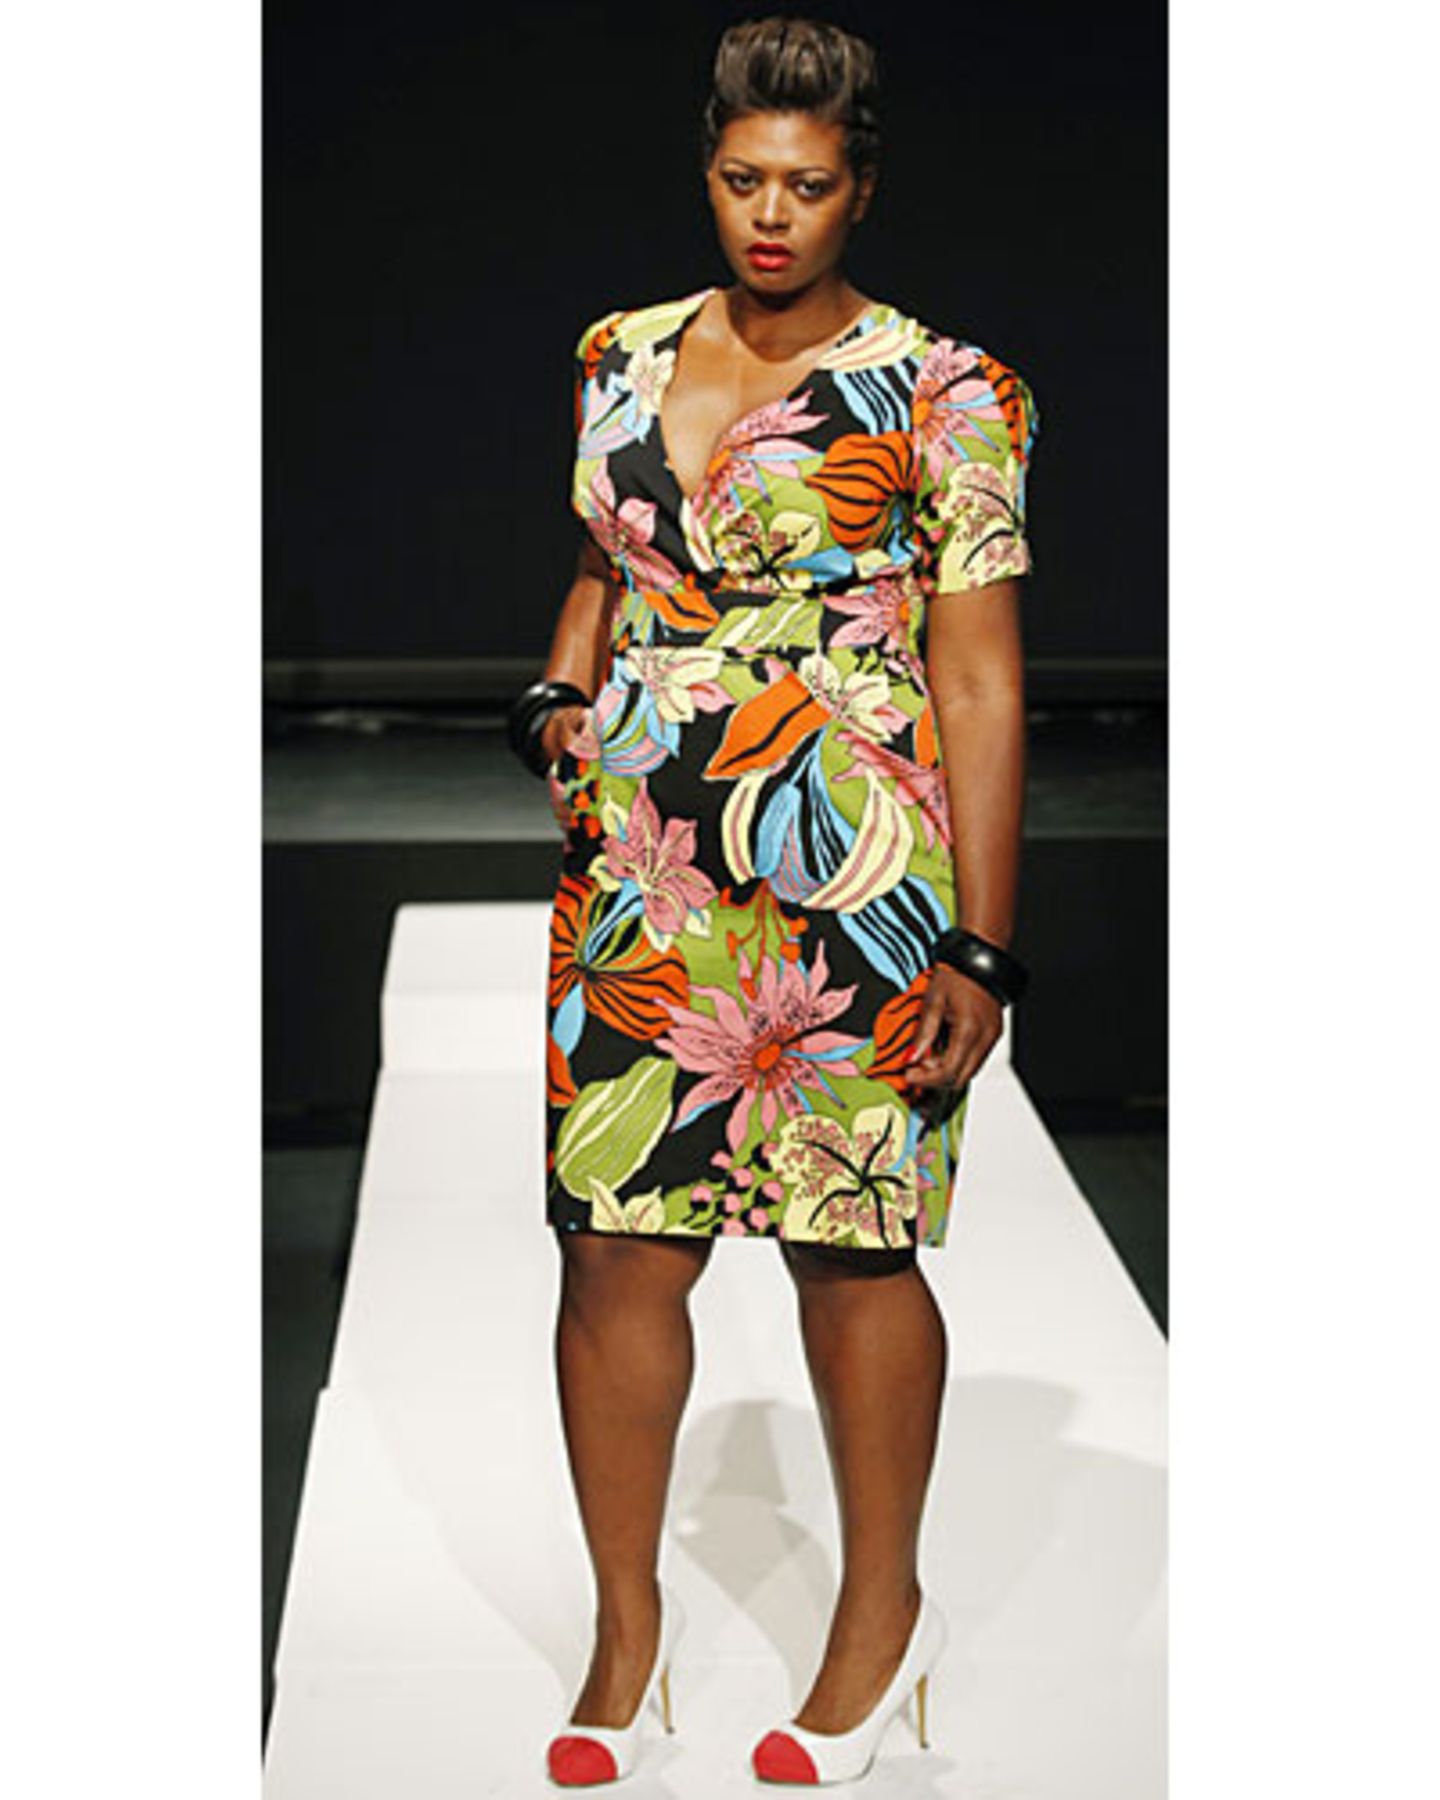 Eden Miller entwirft seit mehr als 20 Jahren Mode, ihr Plus-Size-Label Cabira gründete sie allerdings erst im Februar 2013. Umso überraschter war sie, als sie erfuhr, dass sie für die Präsentation auf der Fashion Week ausgewählt worden war.